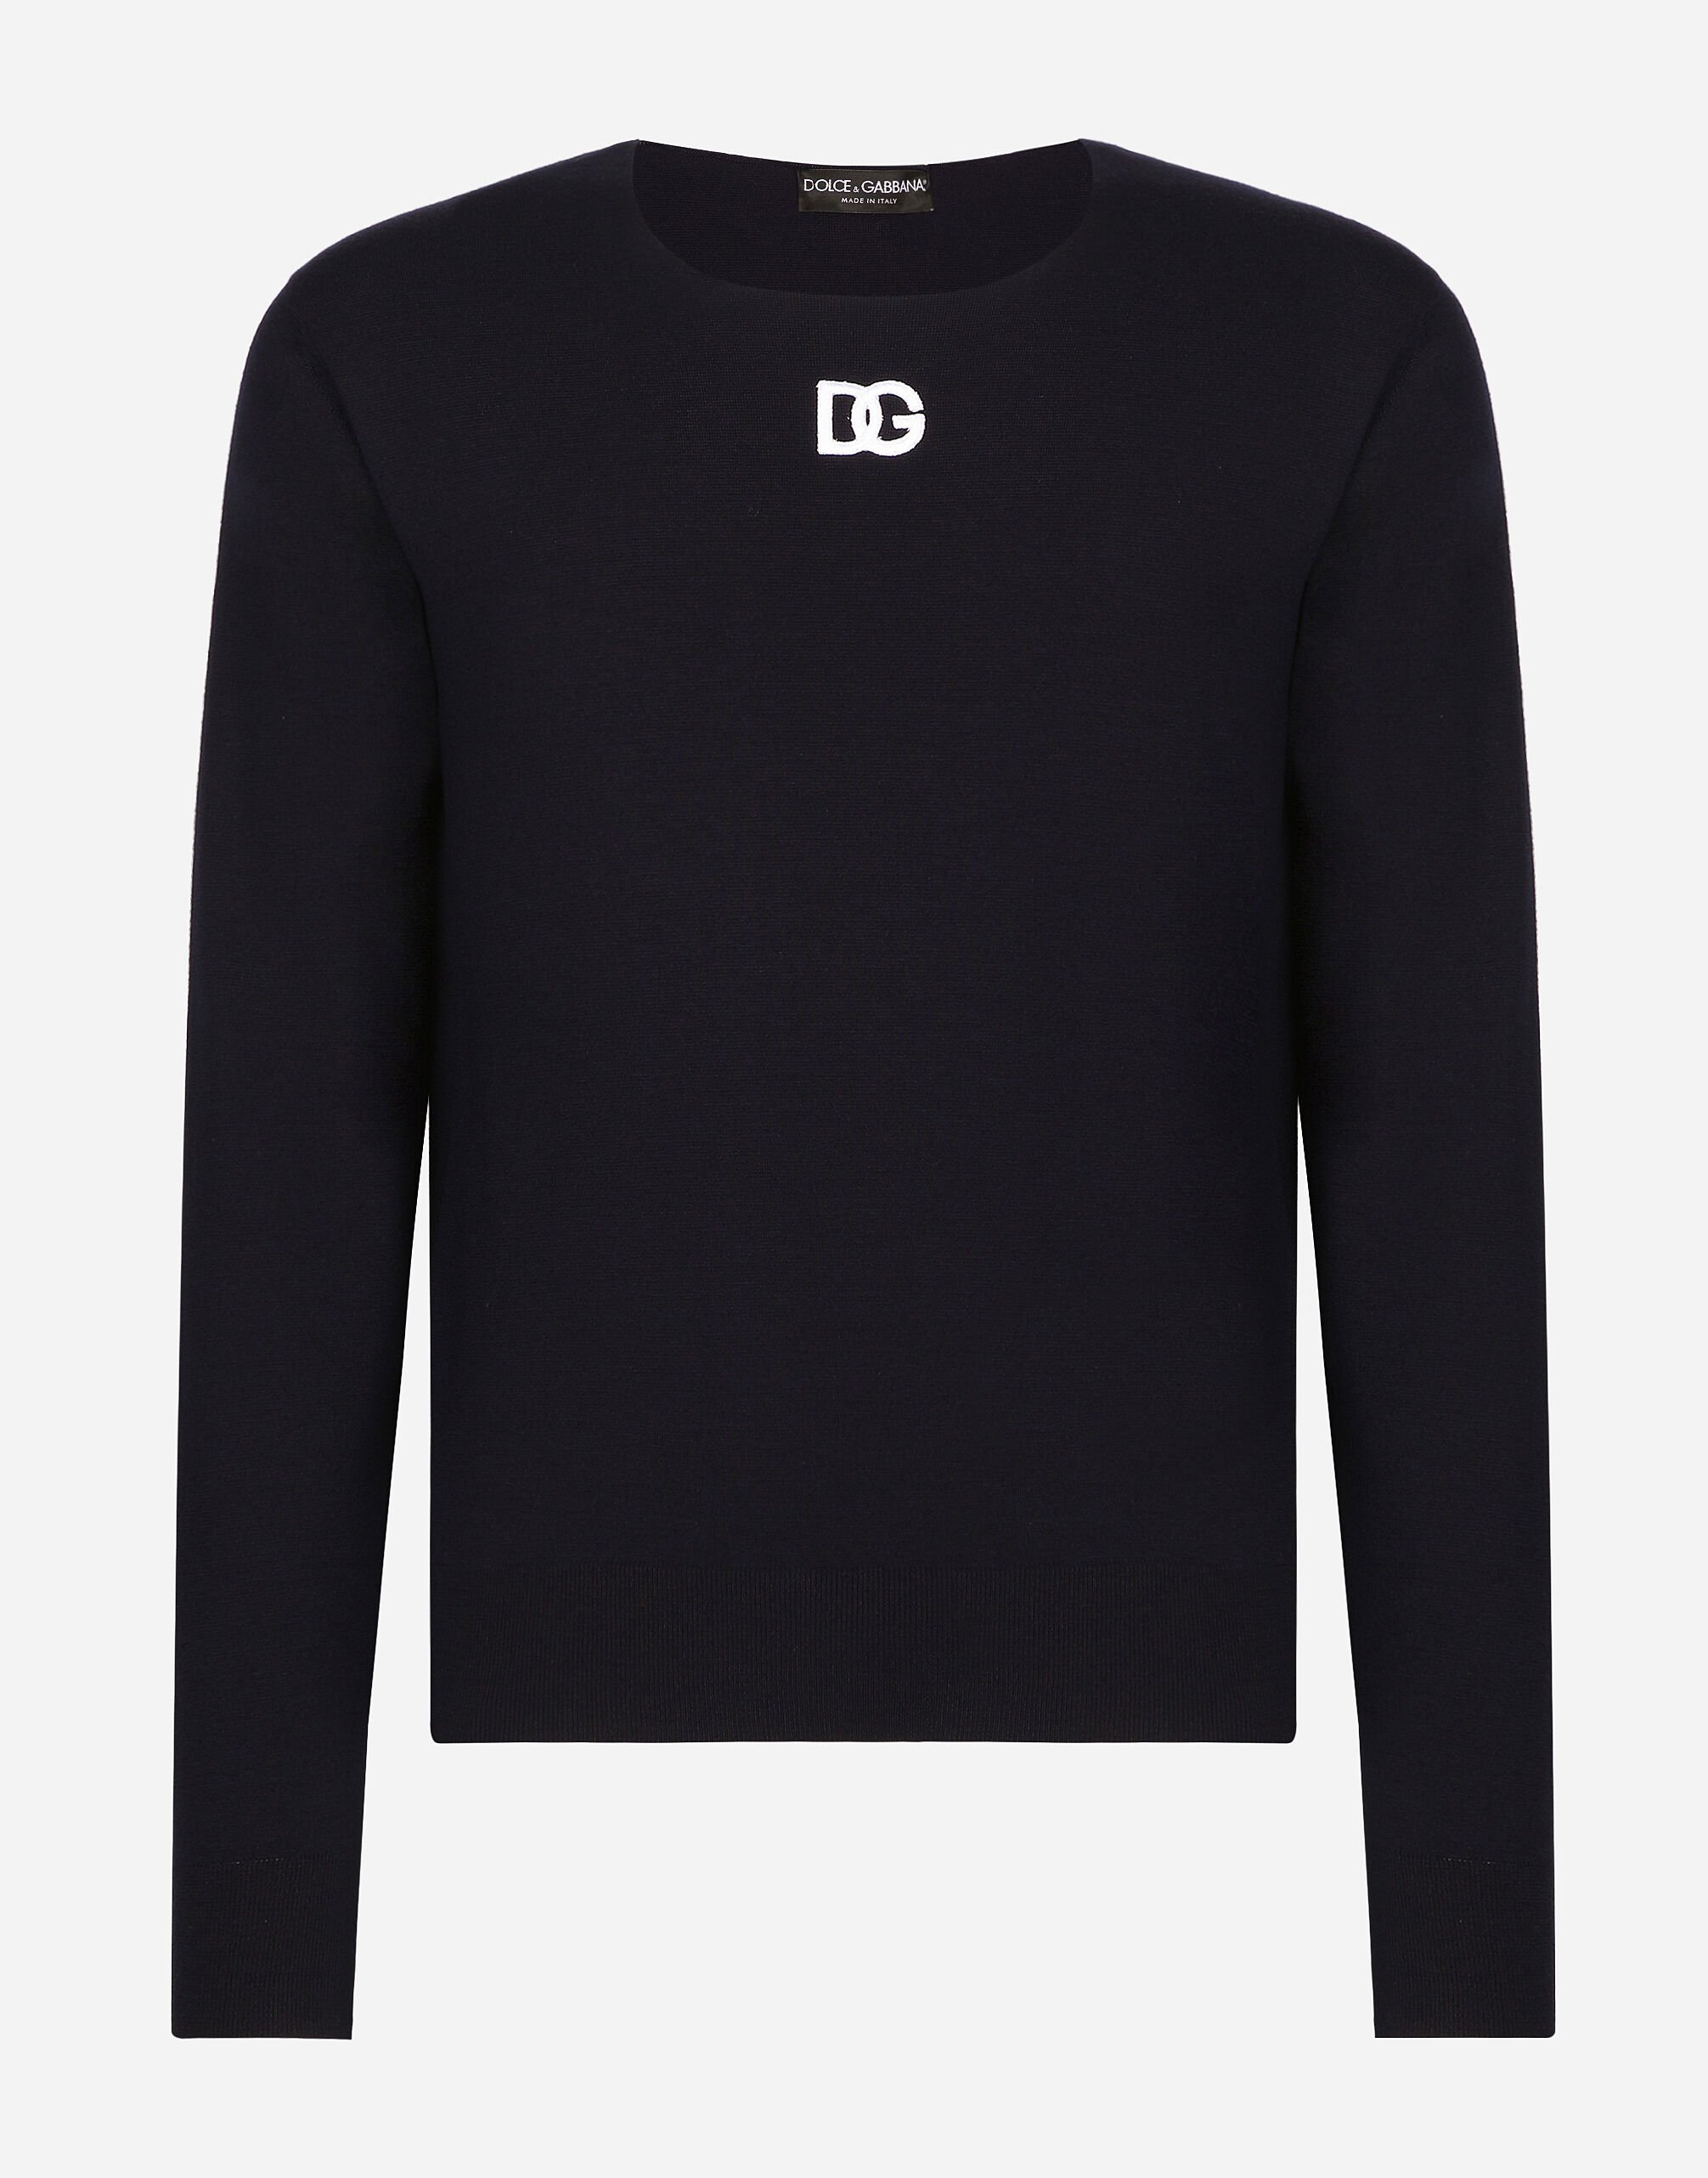 Dolce & Gabbana Round-neck virgin wool sweater with DG logo Black GXZ38ZJBCDS